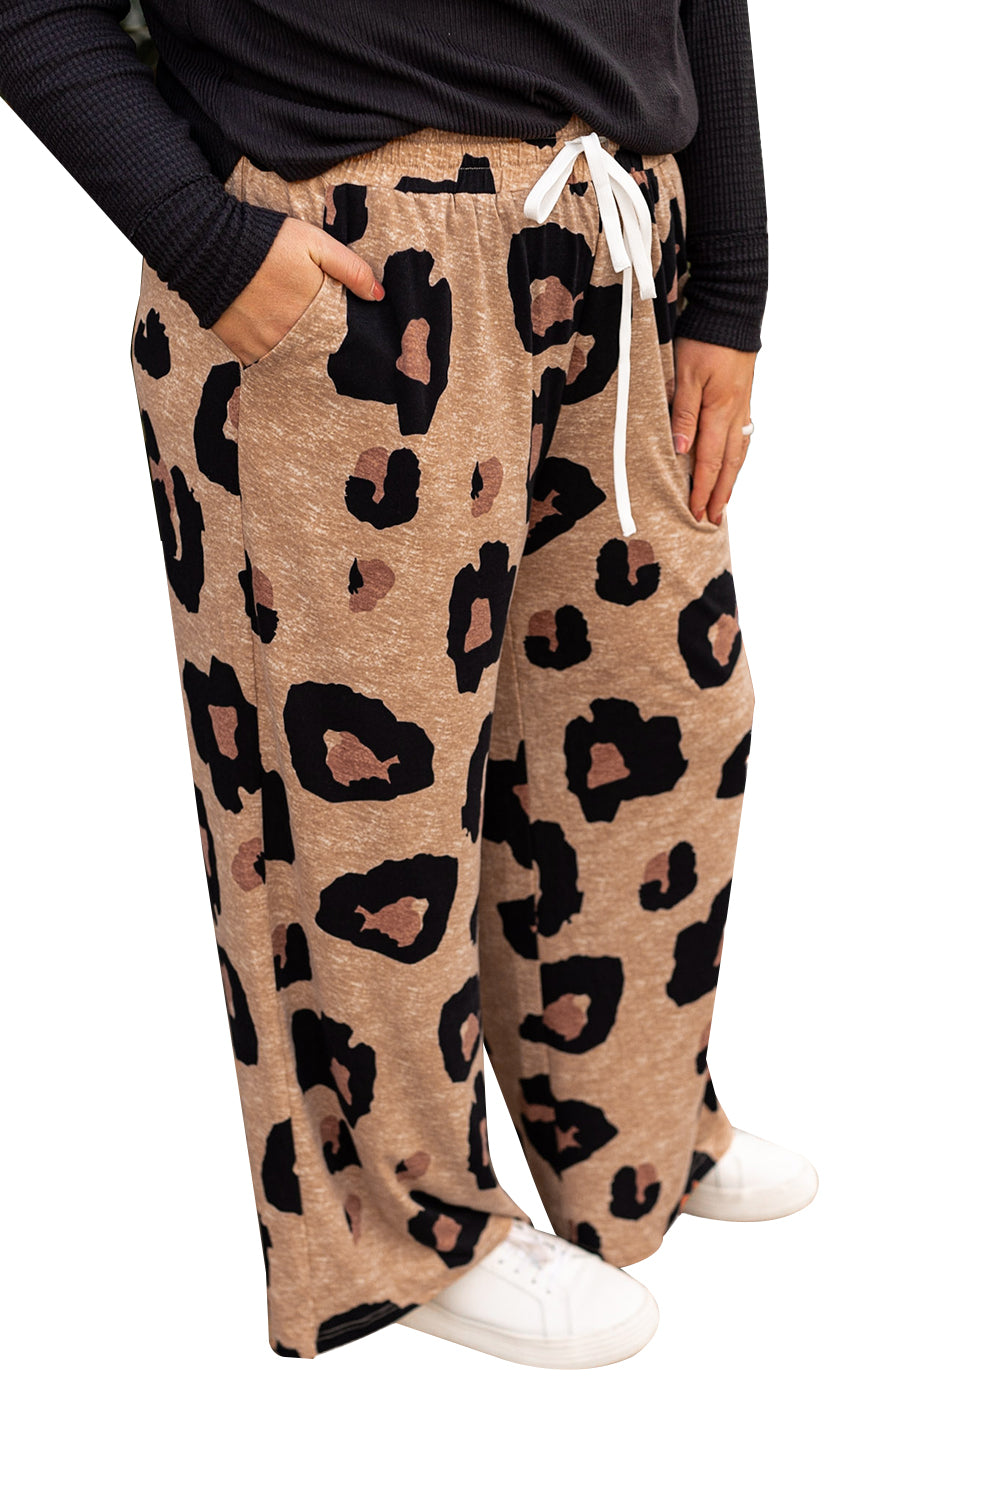 Svjetlo francuske bež leopard print hlače široke nogavice velike veličine s uzicom